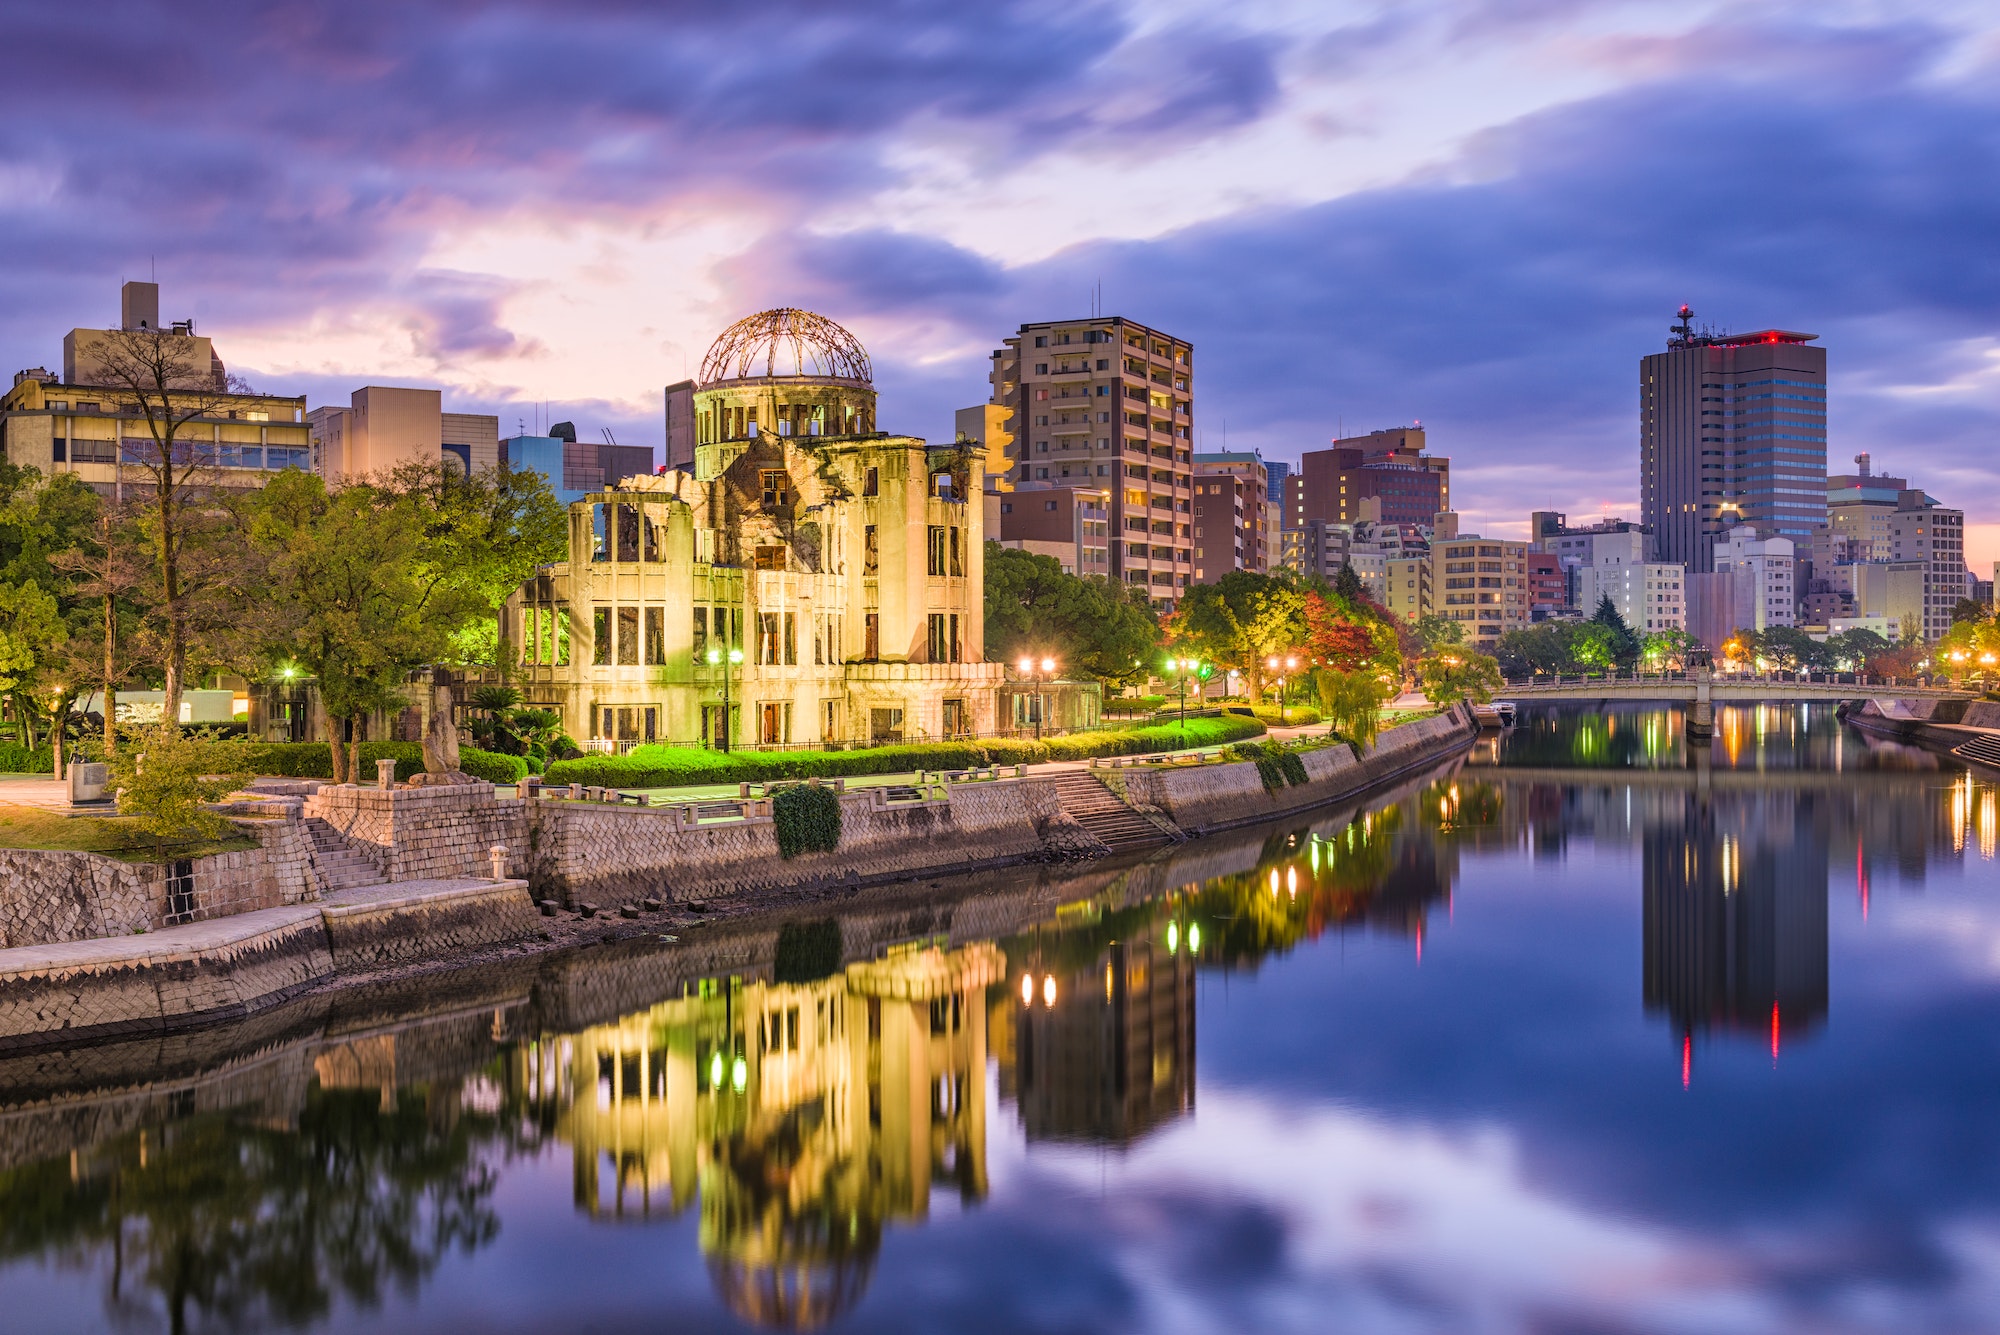 Hiroshima, Japan City Skyline